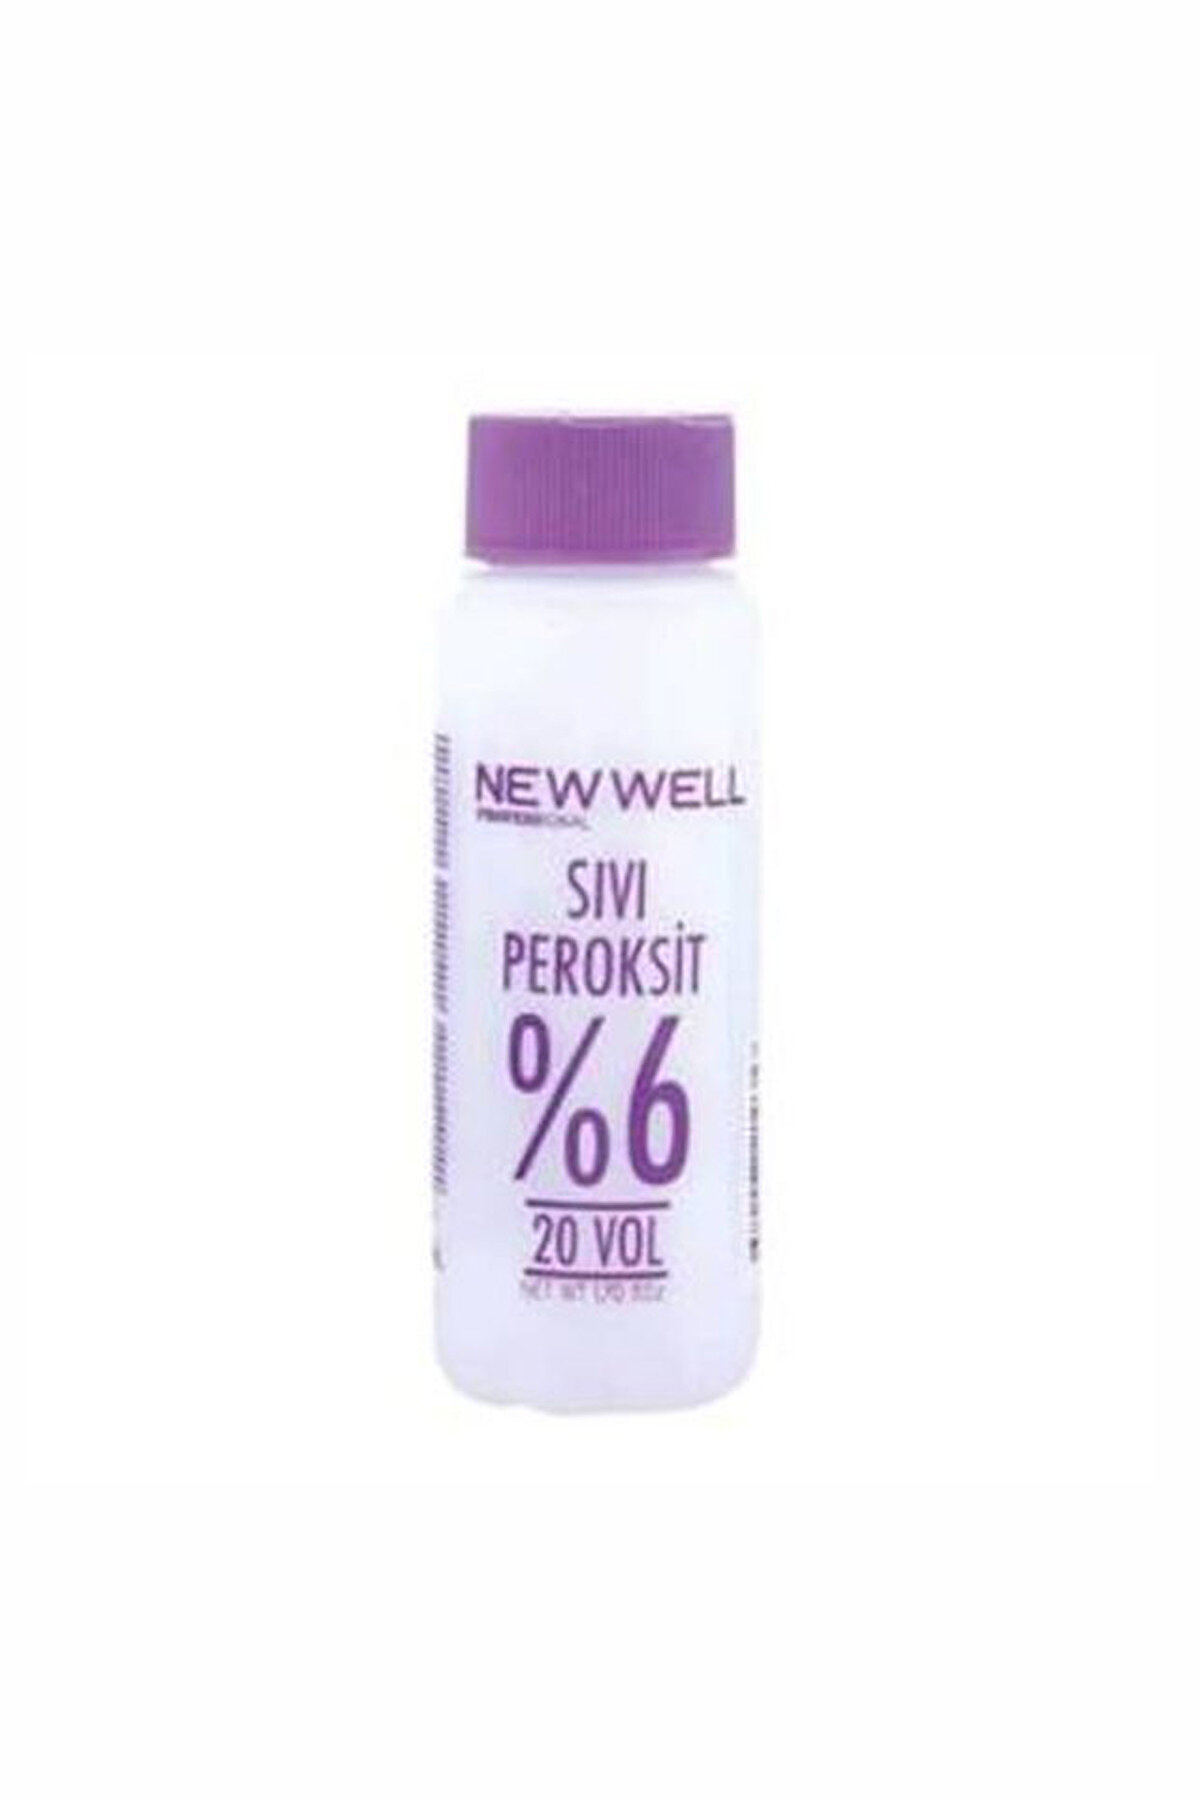 New Well Sıvı Peroksit %6 20 Vol 50 ml 8680097210357